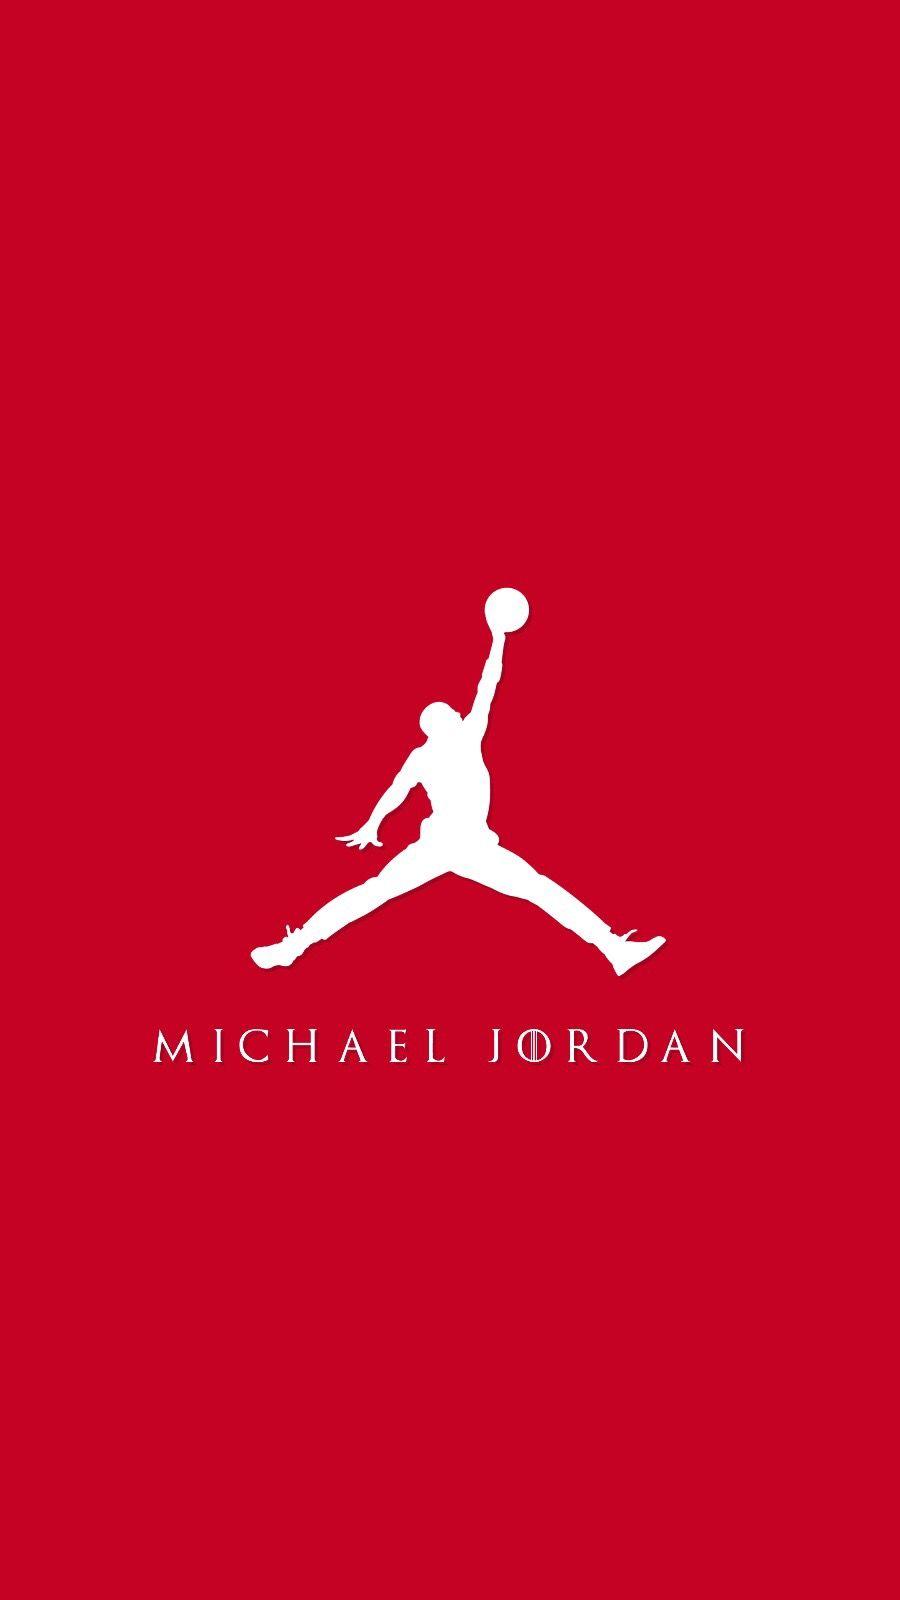 Michael Jordan 4K wallpaper. Jordans, Jordan logo wallpaper, Michael jordan